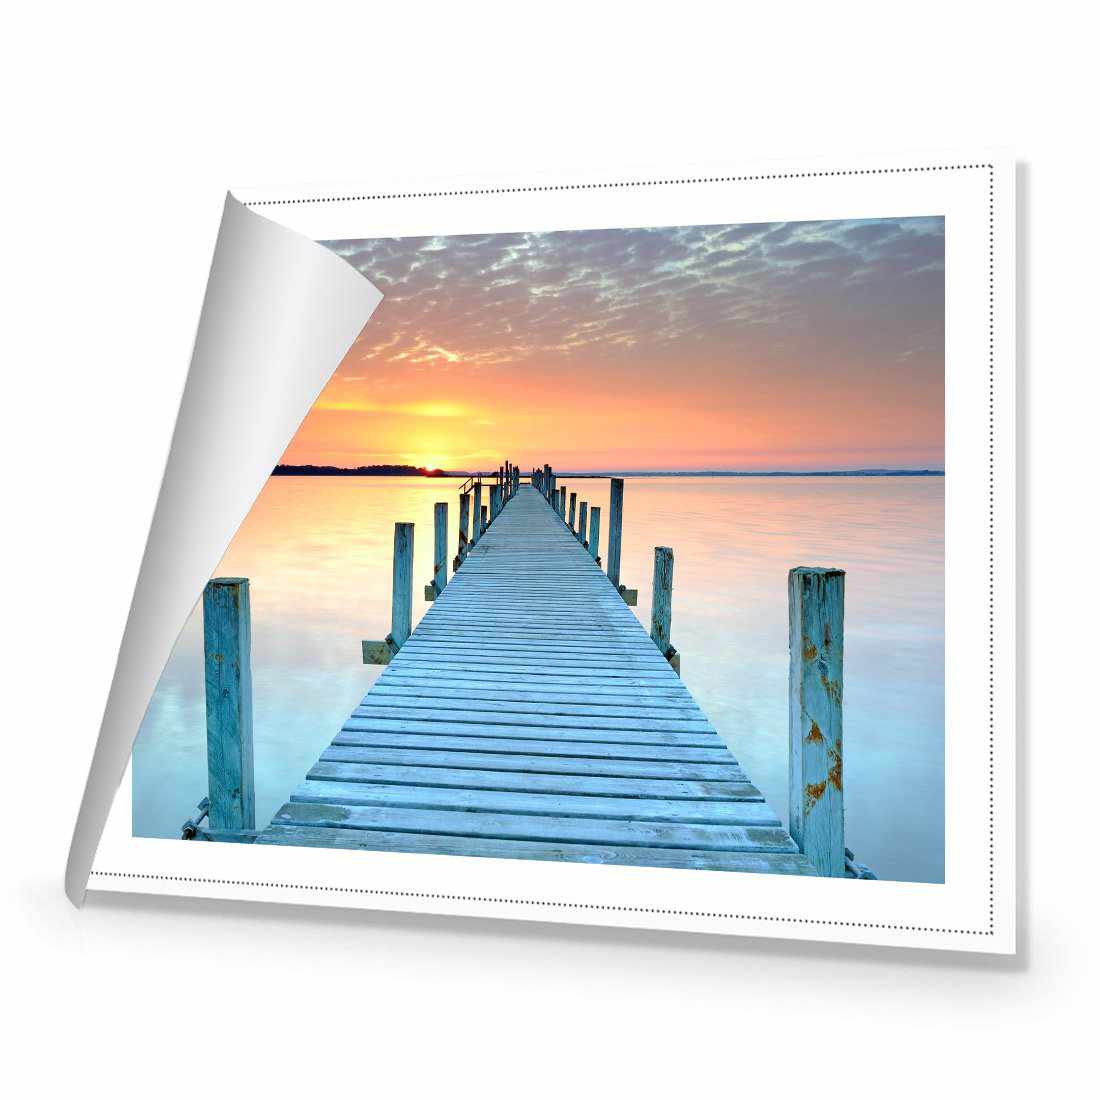 Sunset Pier Canvas Art-Canvas-Wall Art Designs-45x30cm-Rolled Canvas-Wall Art Designs